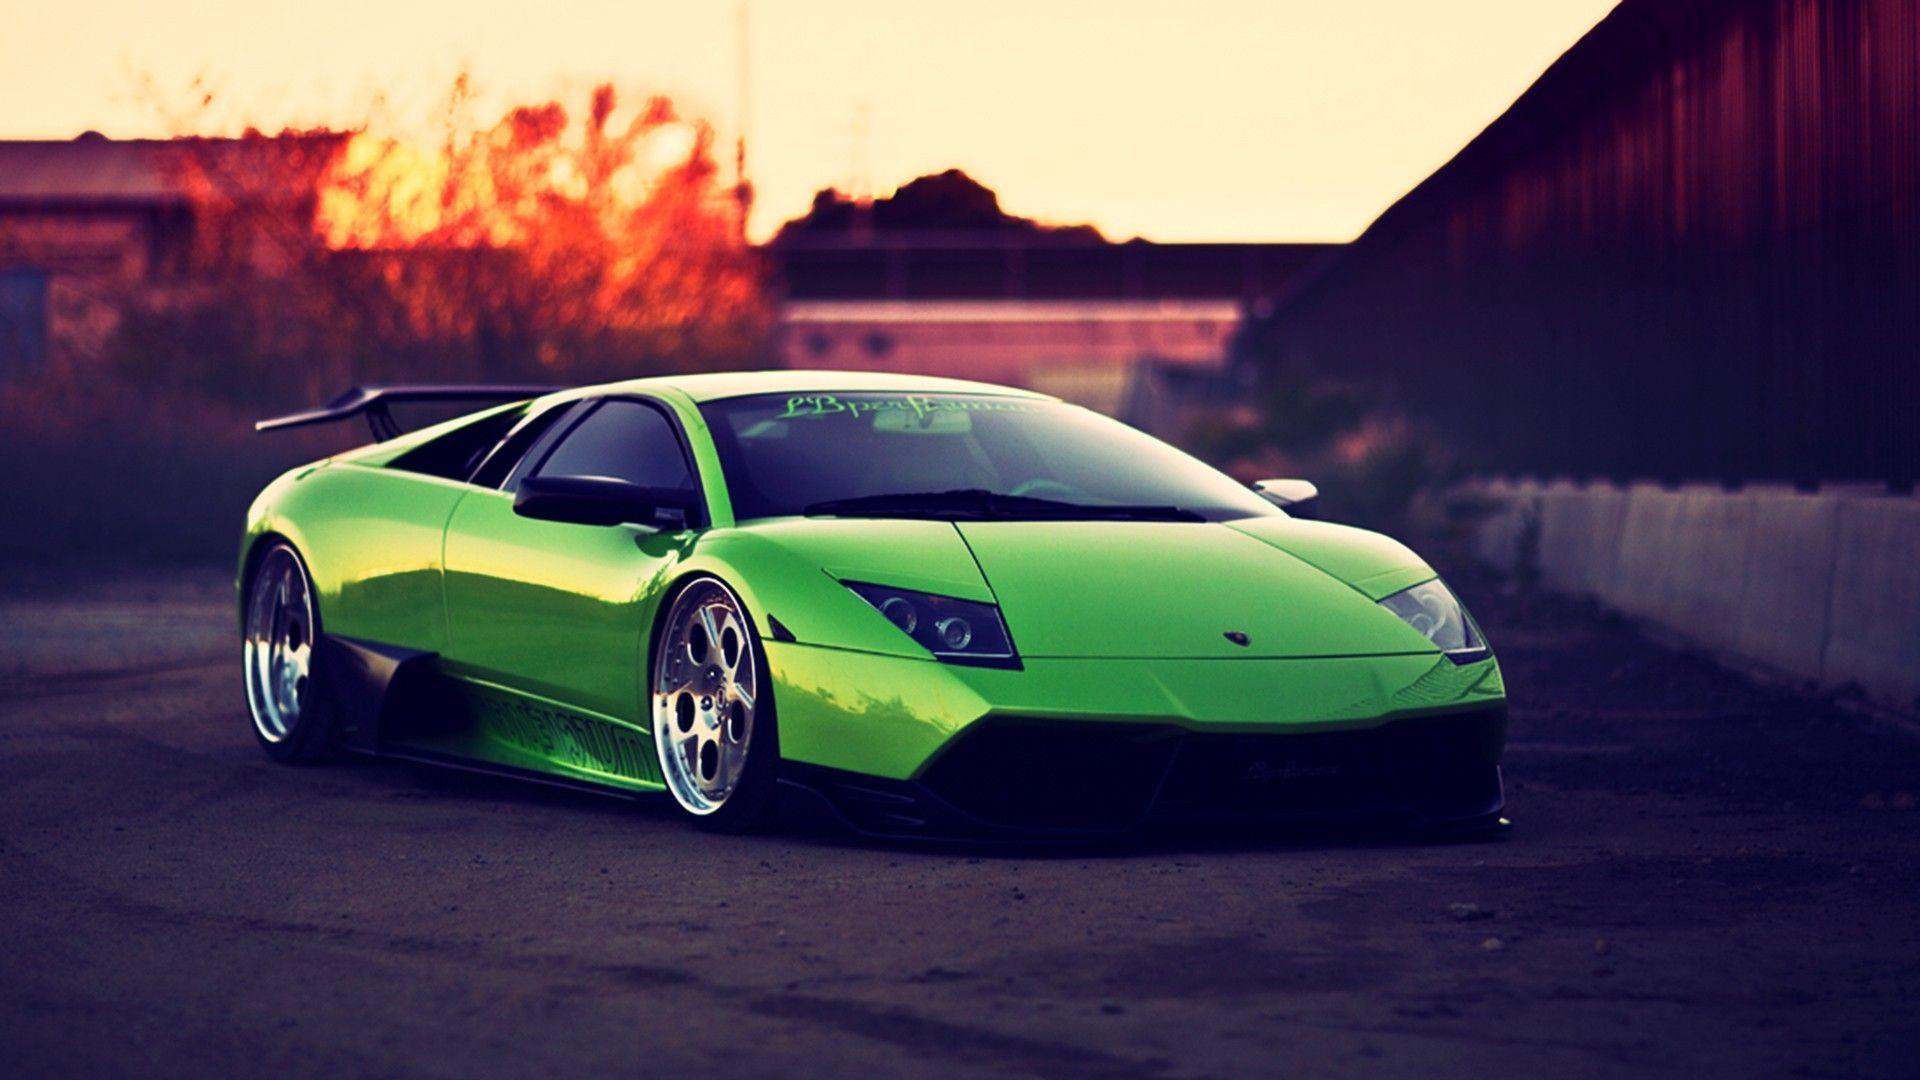 Được biết đến như là biểu tượng của sự giàu có, xe hơi Lamborghini luôn được xem là một trong những ô tô đẹp nhất trên thế giới. Hãy xem hình ảnh này và chiêm ngưỡng vẻ đẹp tuyệt vời của Lamborghini.